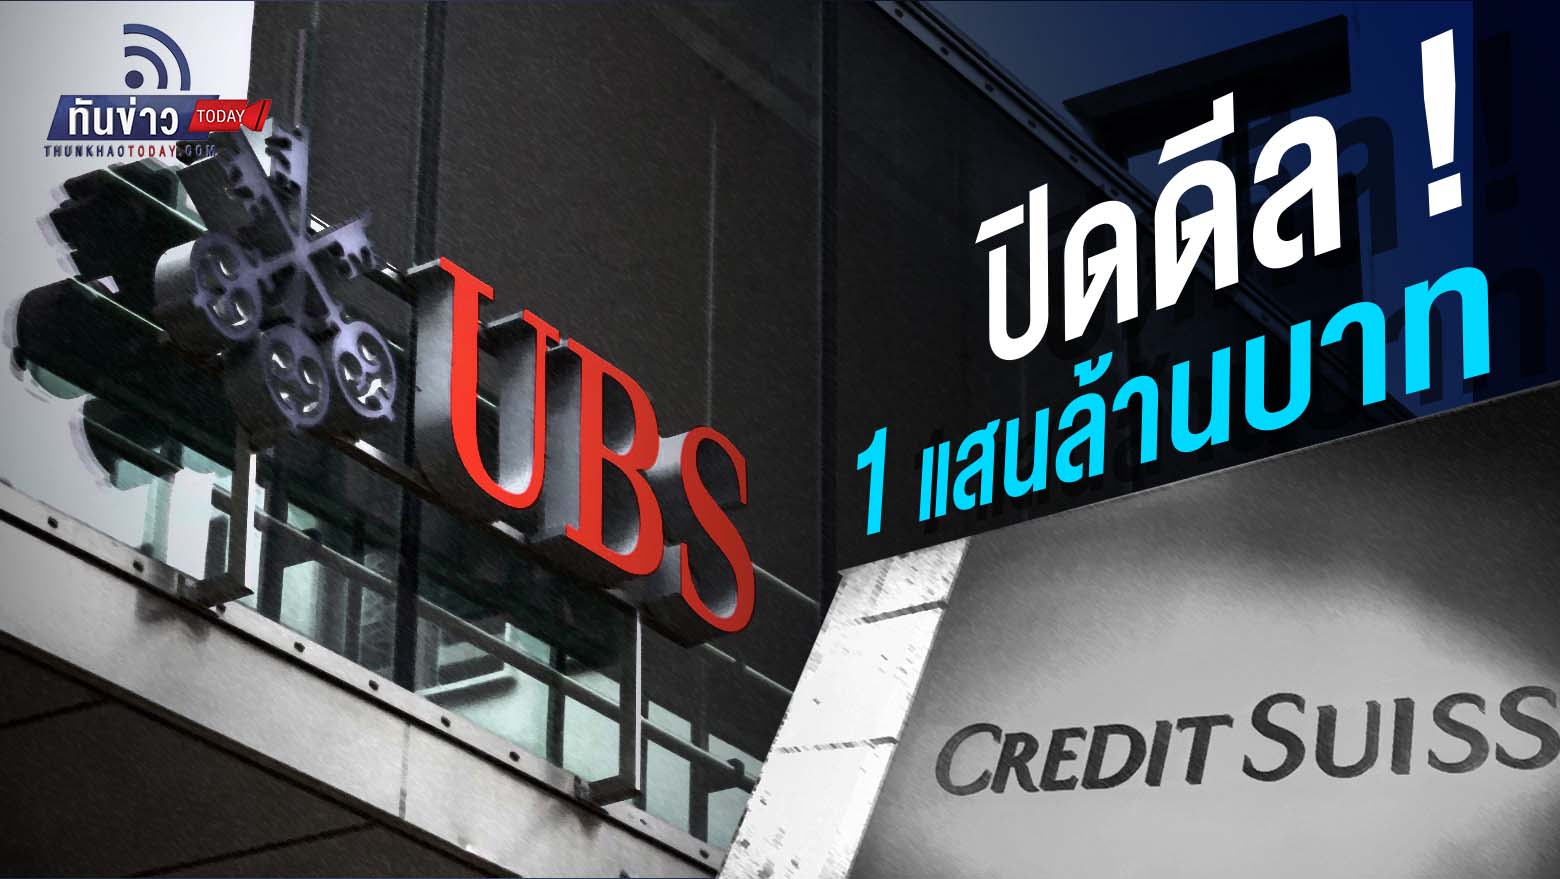 “ปิดดีล ! UBS ล่าสุดที่จะเซื้อ Credit Suisse ในราคา 3.2 พันล้านเหรียญสหรัฐ โดยมีอัตราส่วนการแปลงที่ 22.48 หุ้น CS จะได้รับ 1 หุ้น UBS